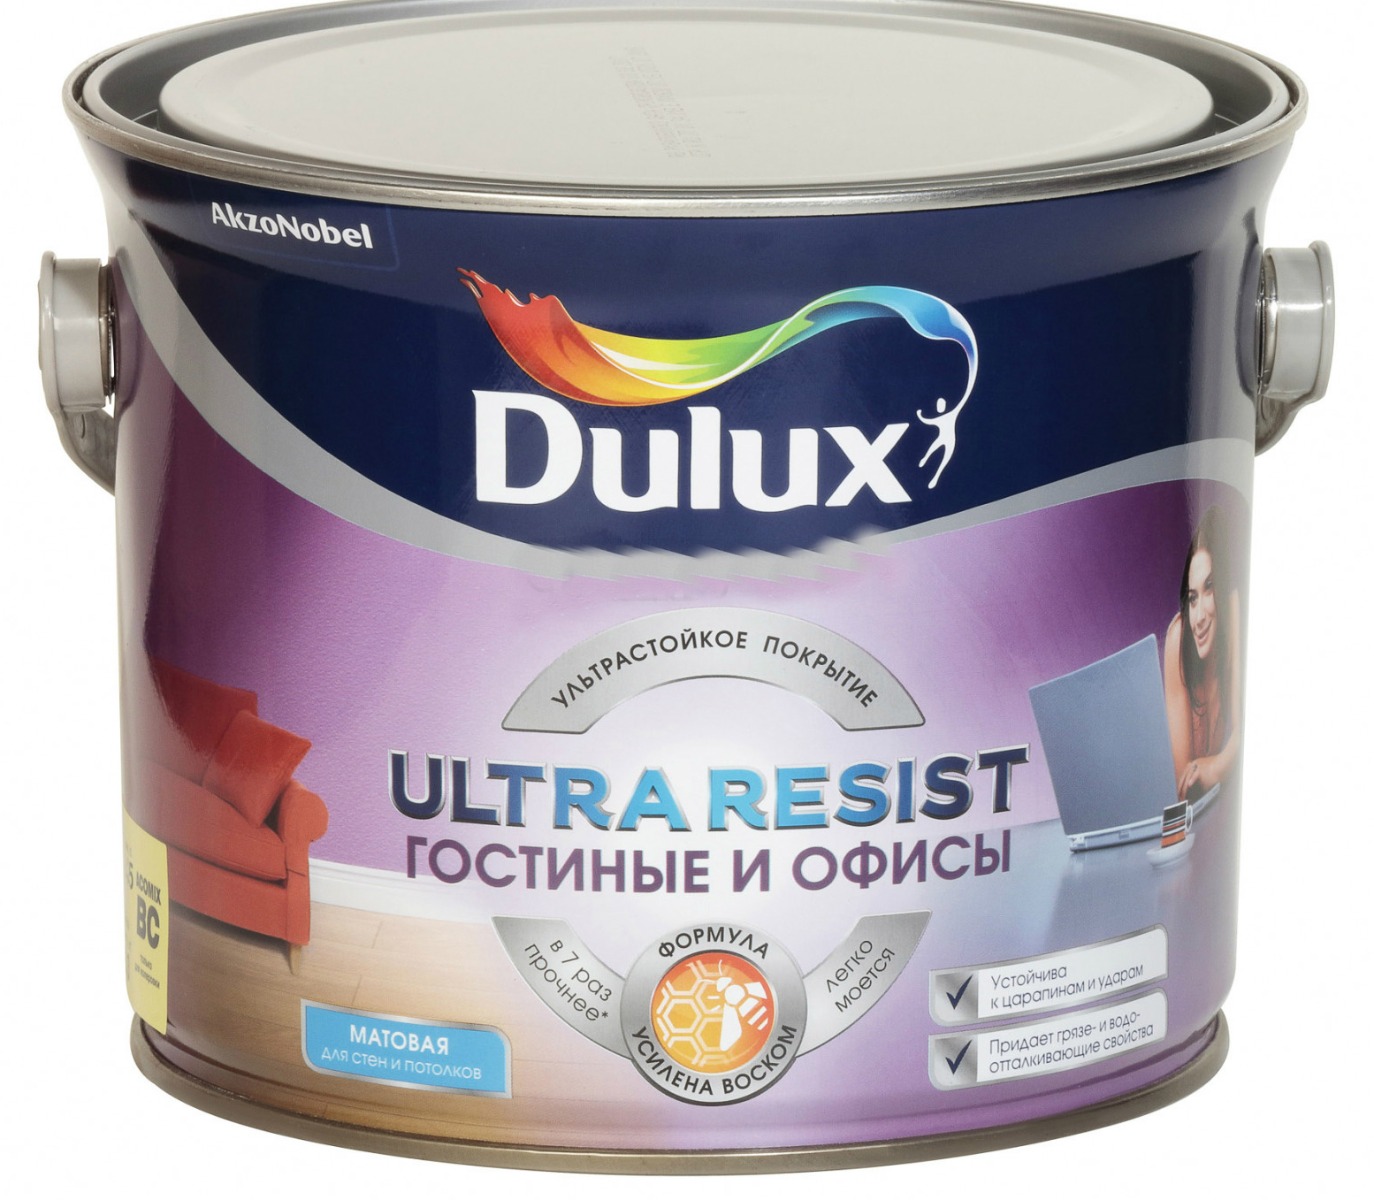 Dulux Ultra resist гостиные и офисы